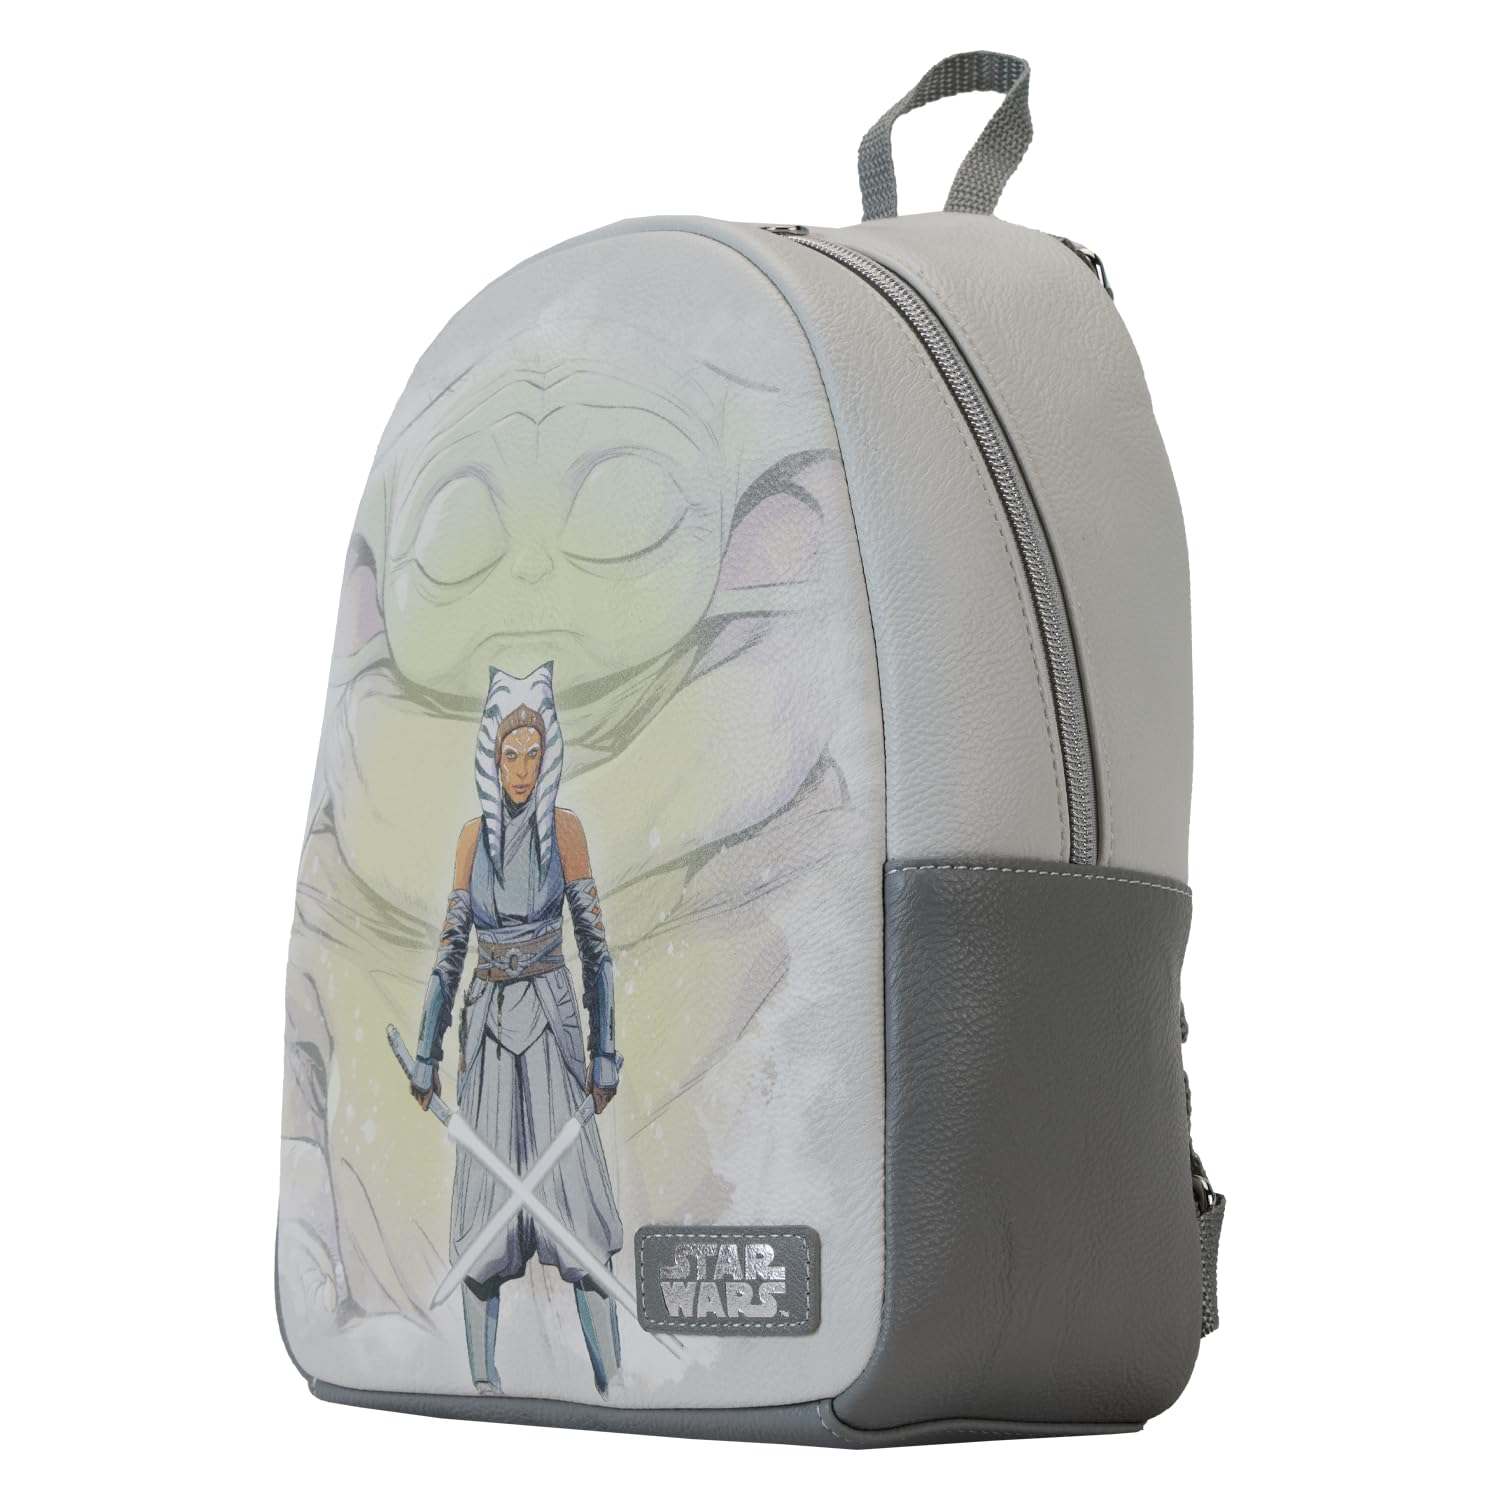 Funko Mini-Backpack: Lucas - Star Wars, Ahsoka